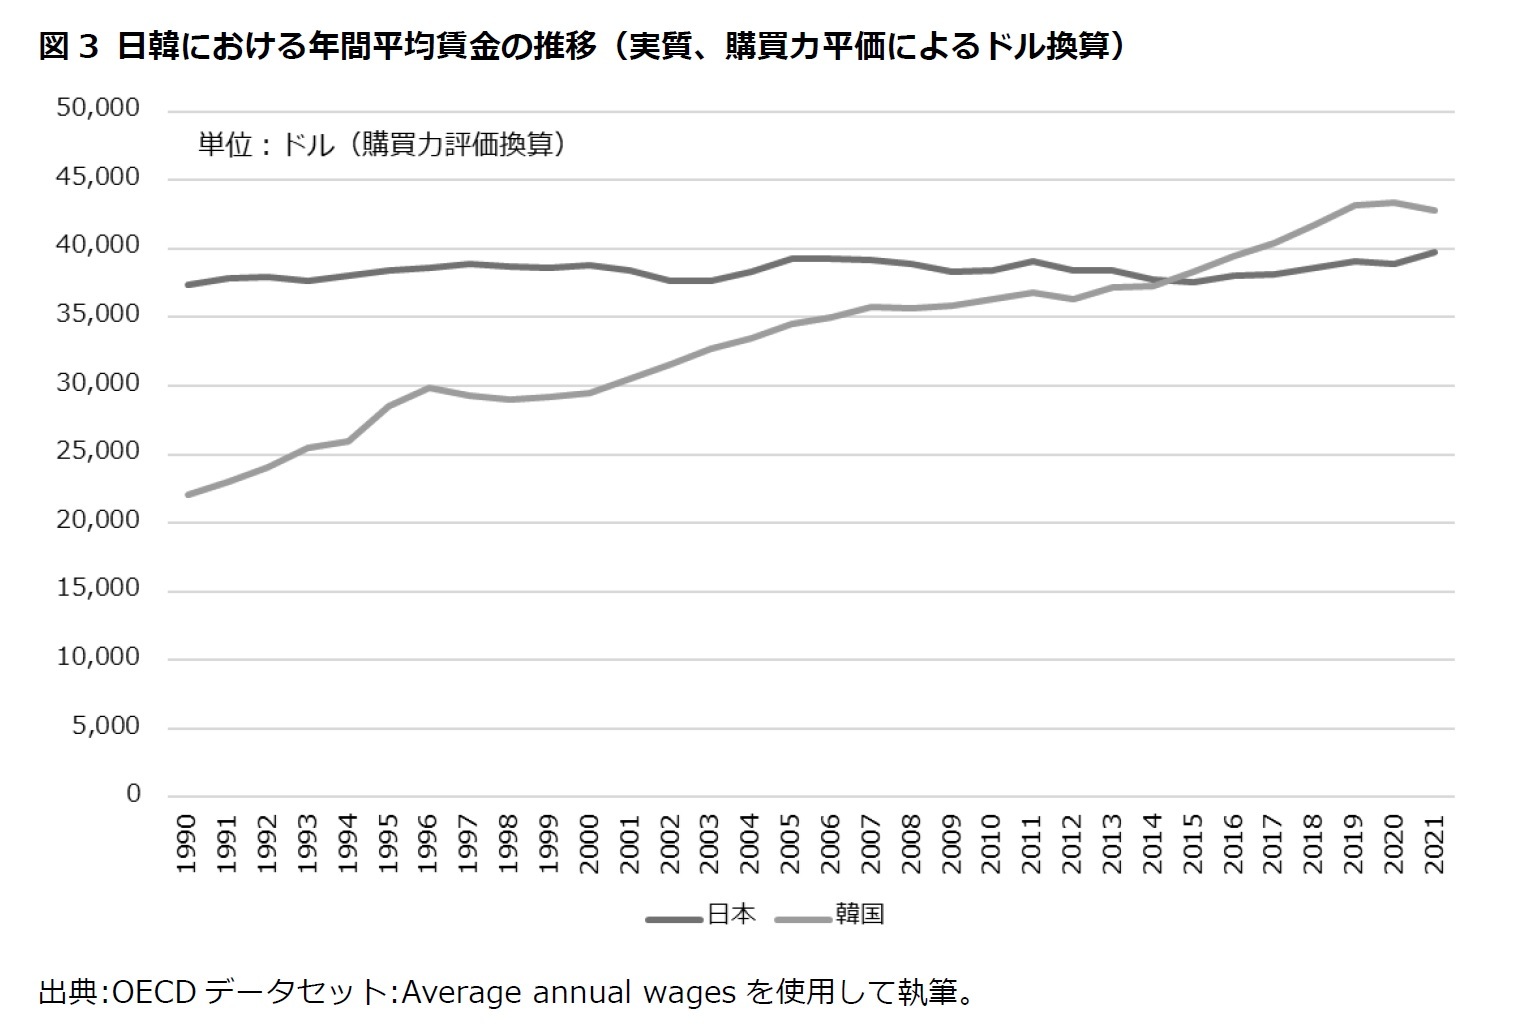 図3 日韓における年間平均賃金の推移（実質、購買力平価によるドル換算）